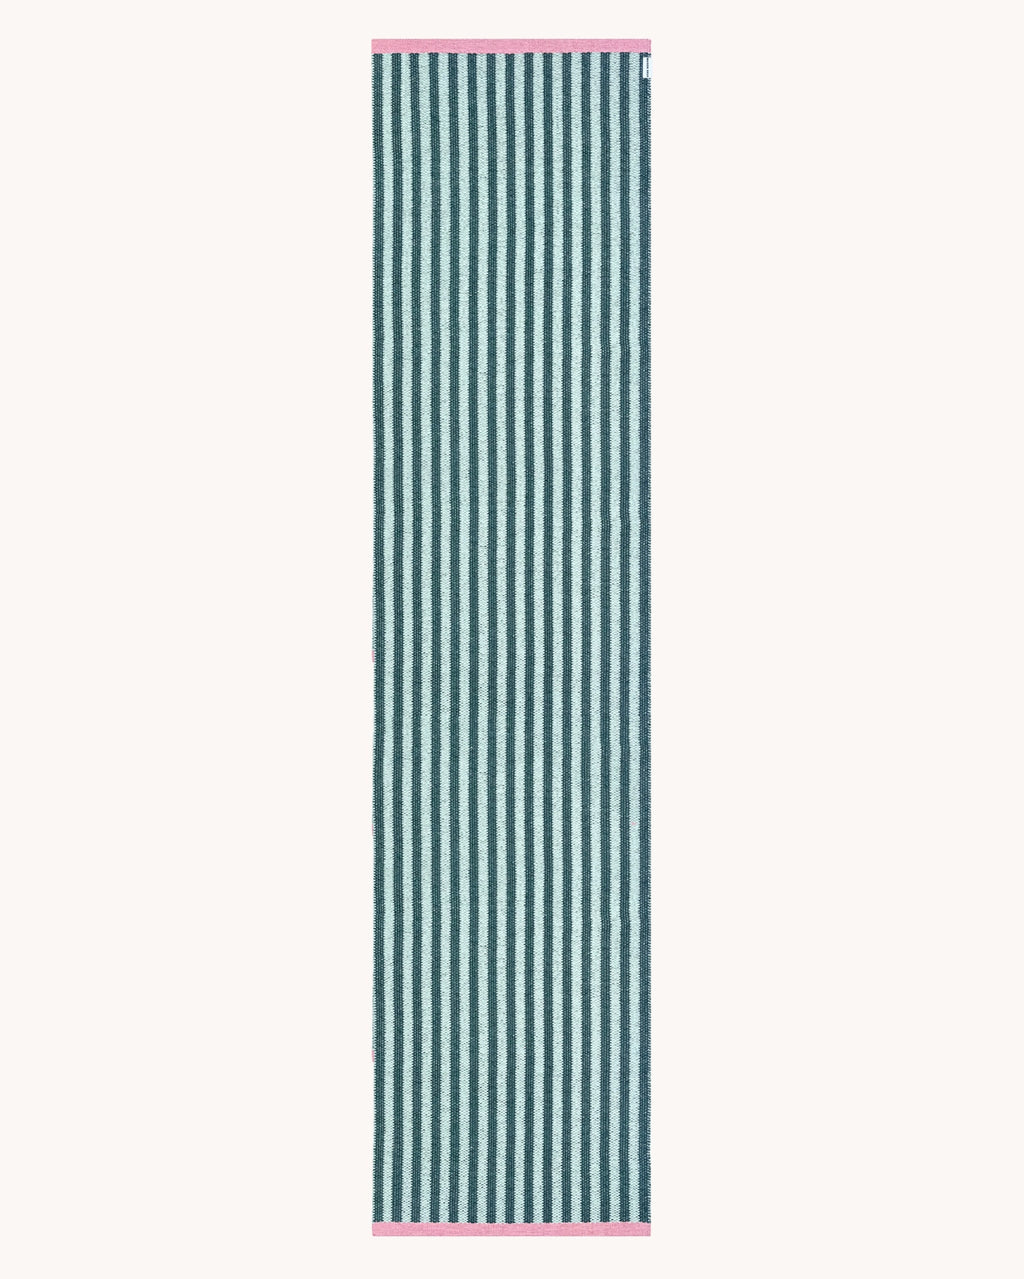 Stripe Rug Cactus 70 x 300 cm